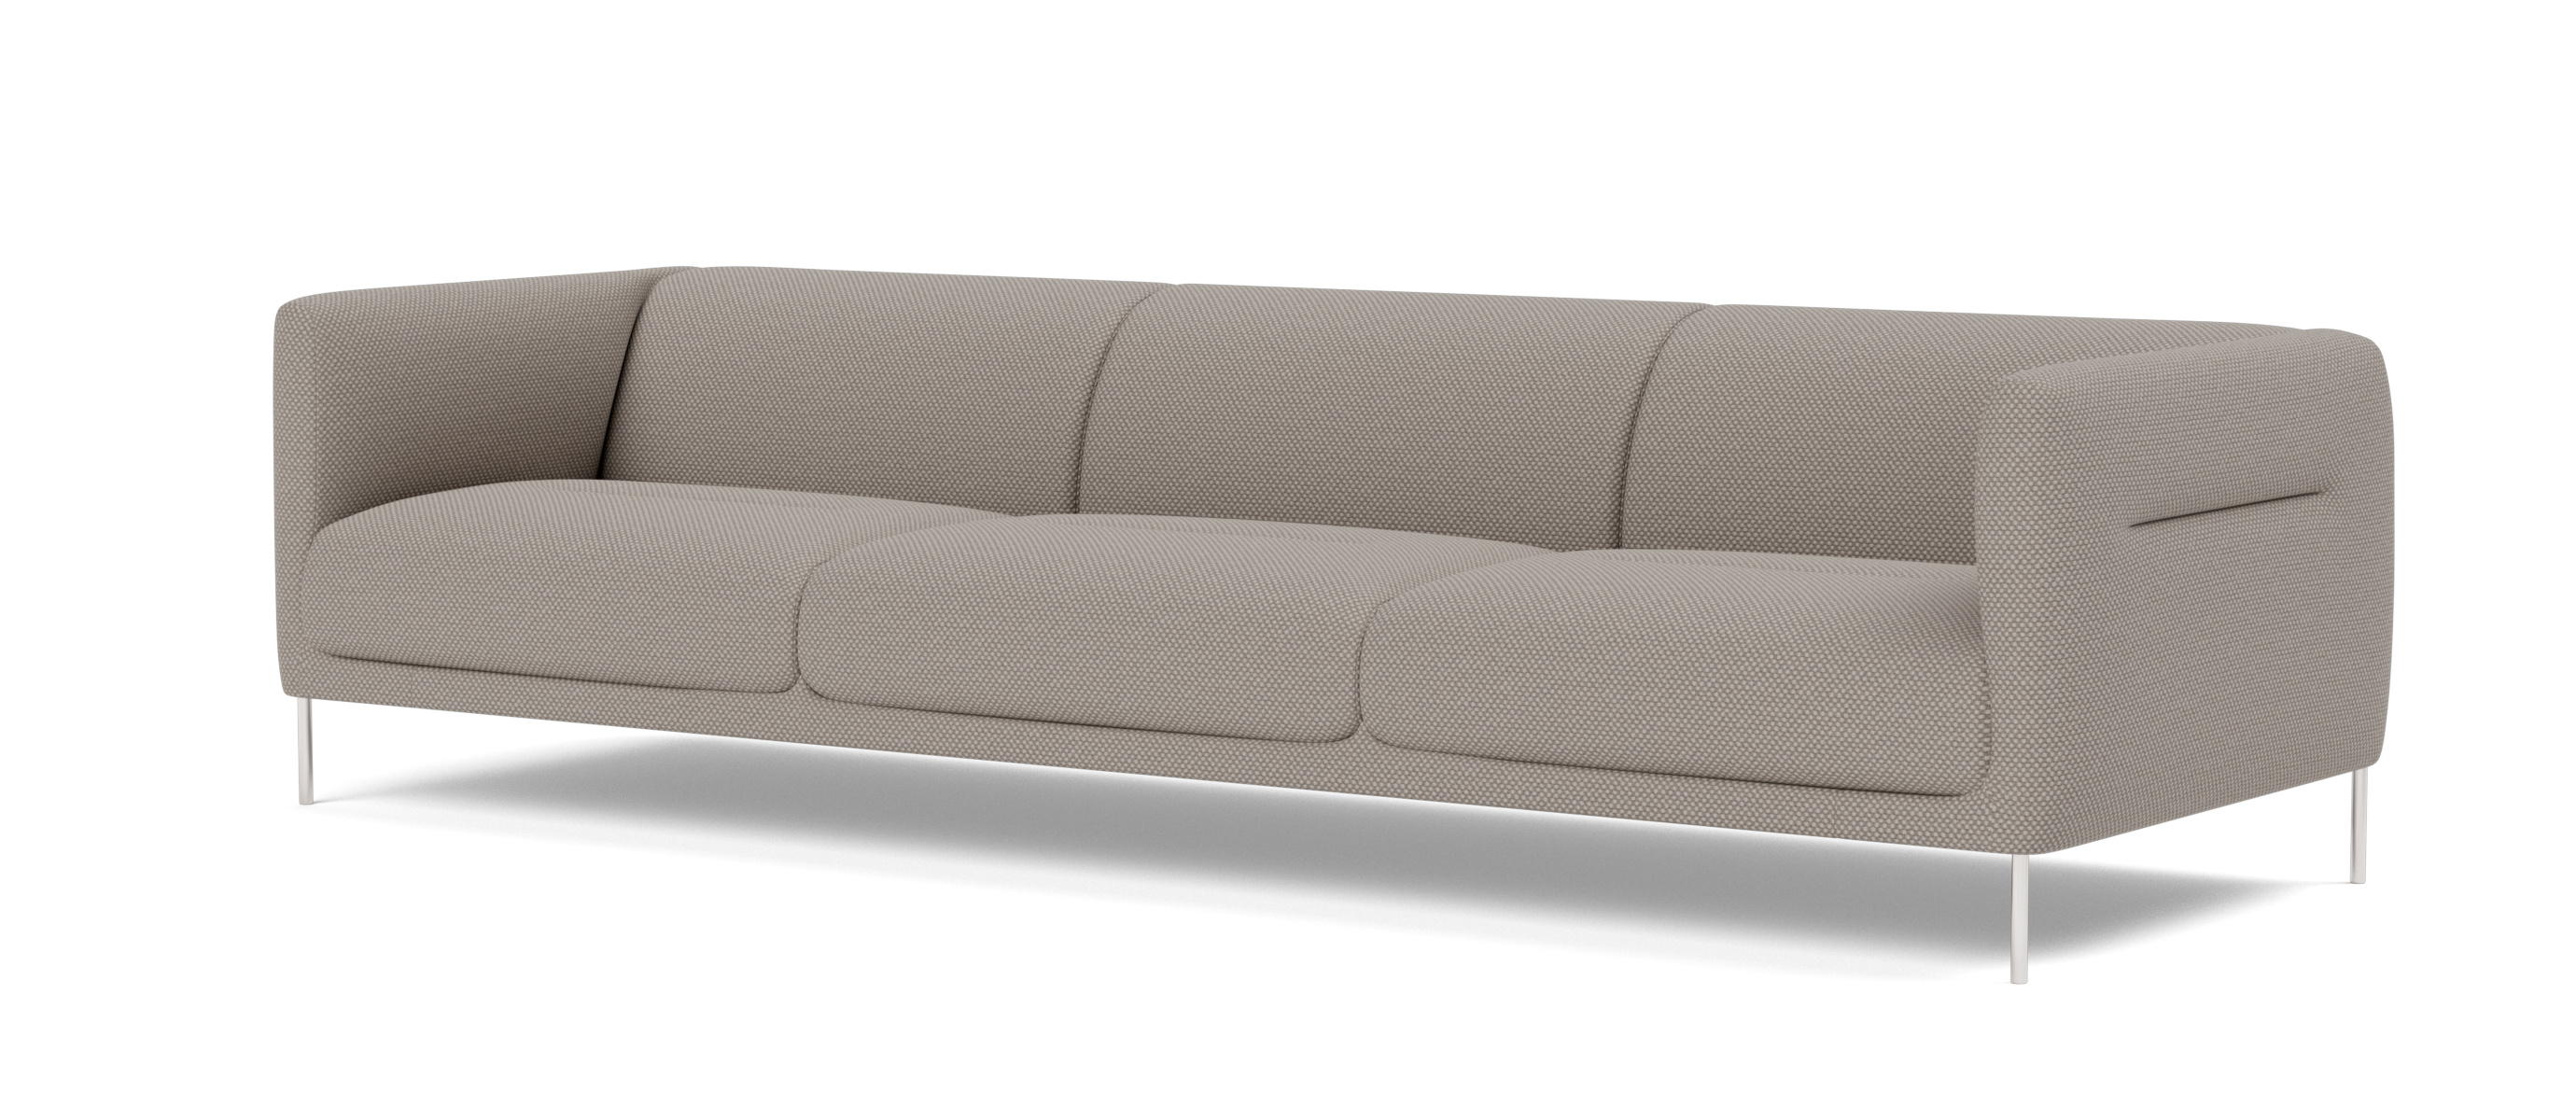 Konami Sofa 3-Sitzer, schwarz / sisu 0105